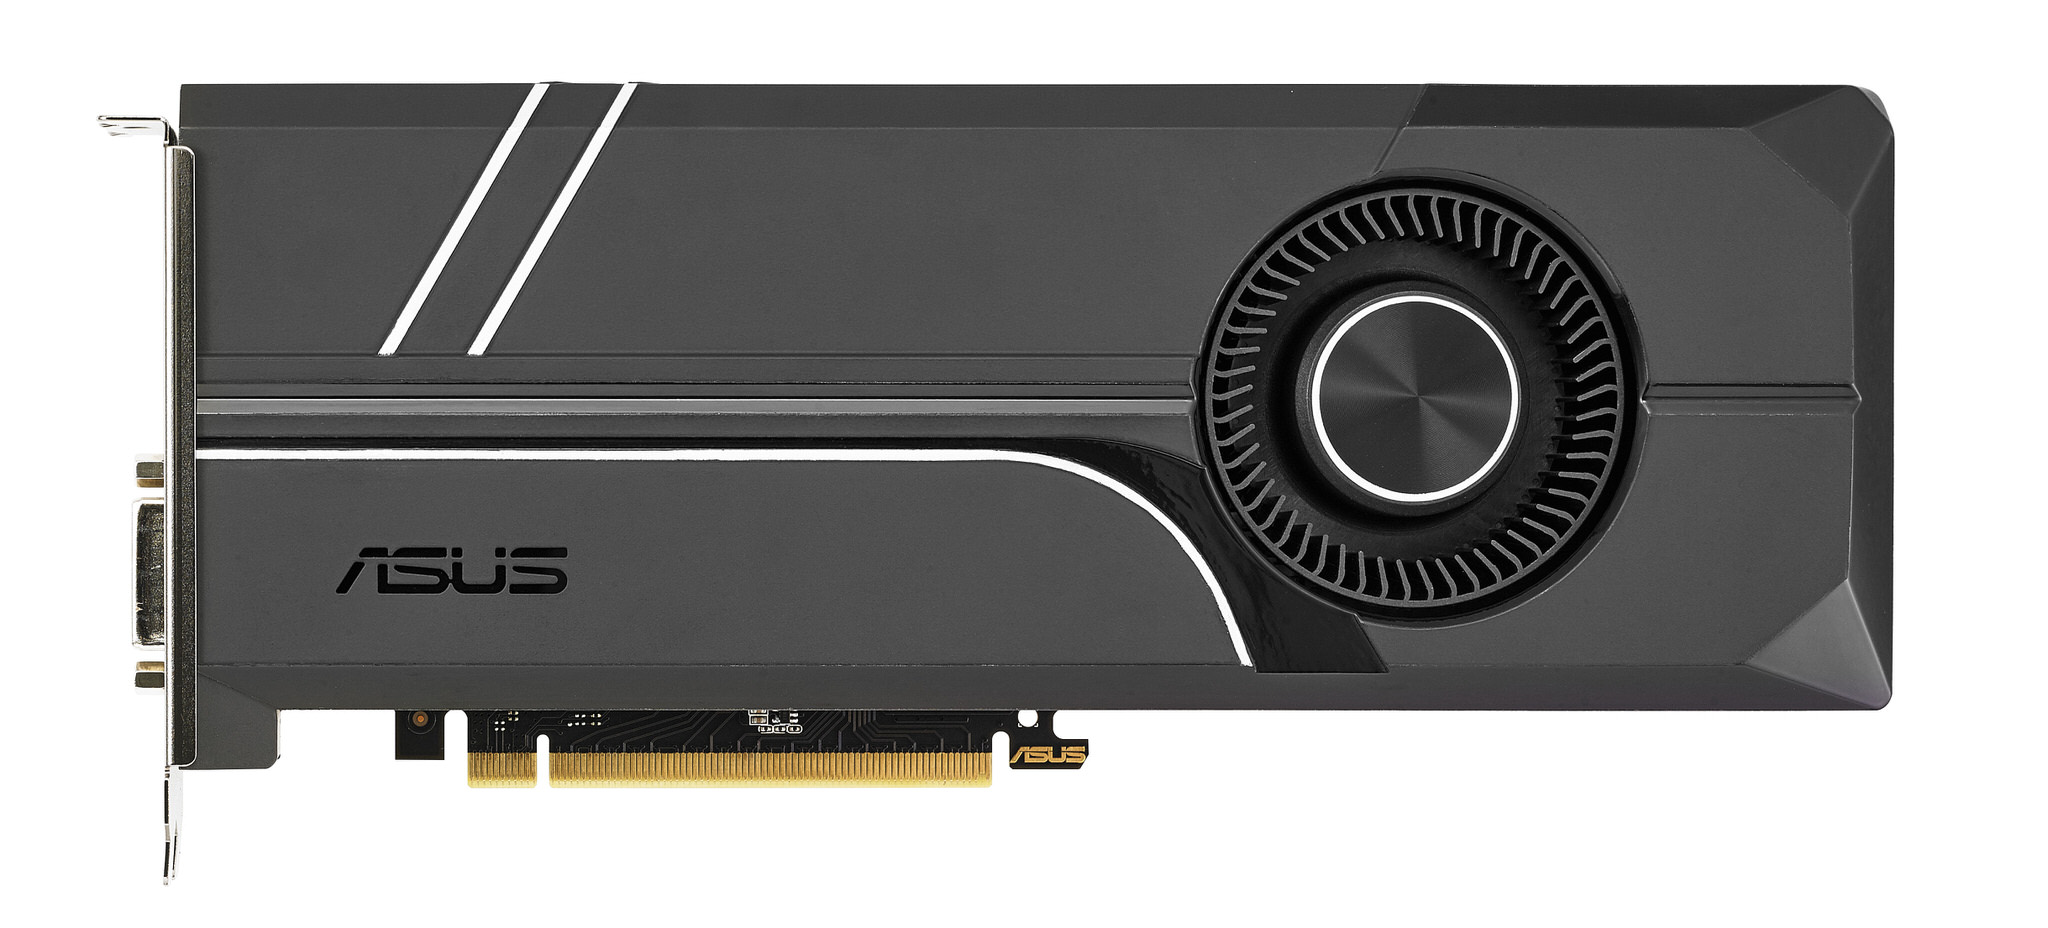 ASUS ra mắt card đồ hoạ GeForce GTX 1070 Ti mới